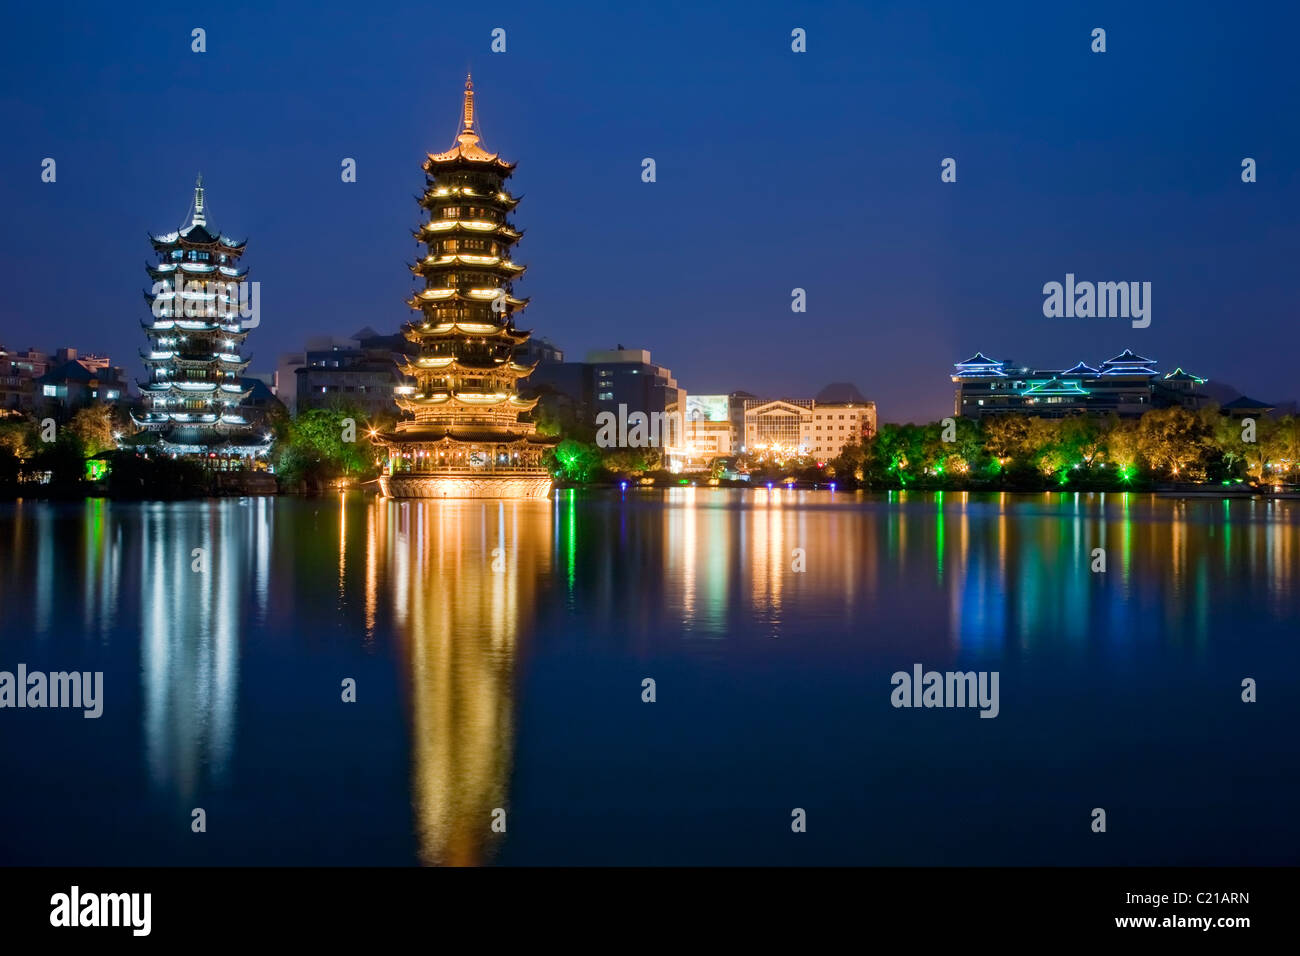 Soir vue de l'or et l'argent de pagodes, aussi connu sous le soleil et la Lune les pagodes, reflété dans le lac Sapin Guilin, Chine Banque D'Images